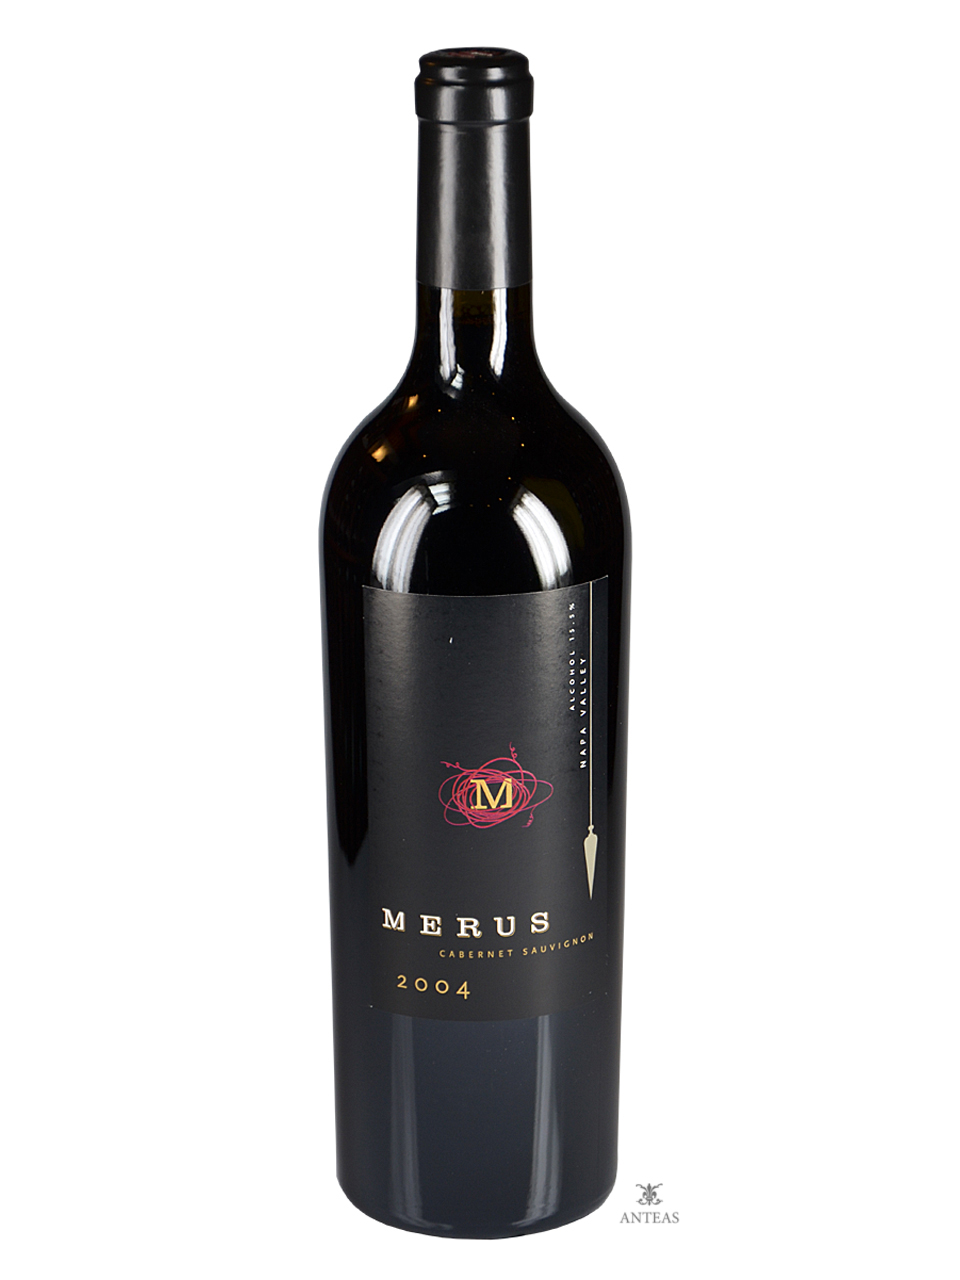 Merus Wines – Cabernet Sauvignon 2004